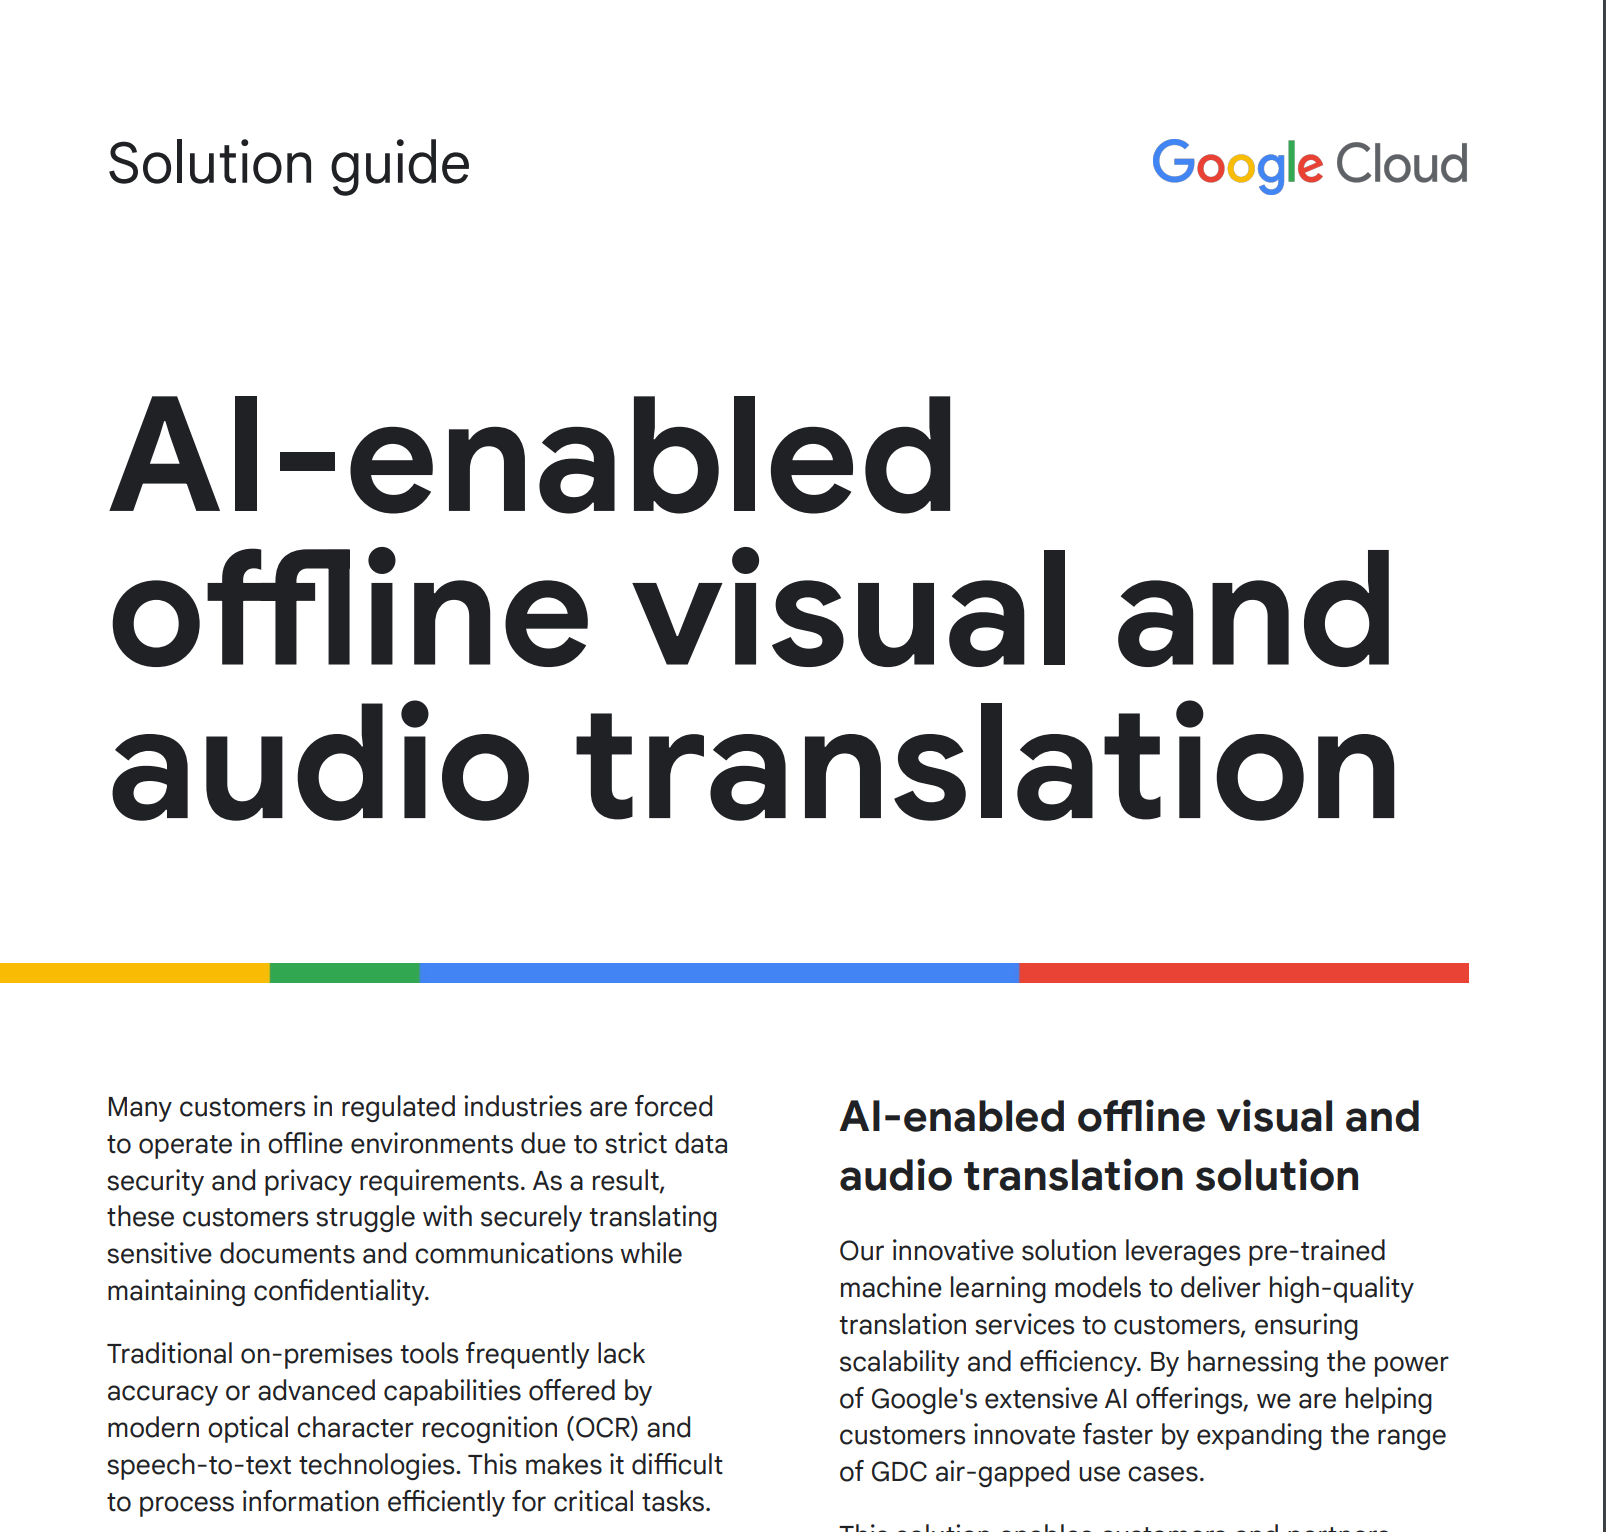 Guía de soluciones para la traducción de audio y vídeo sin conexión con IA